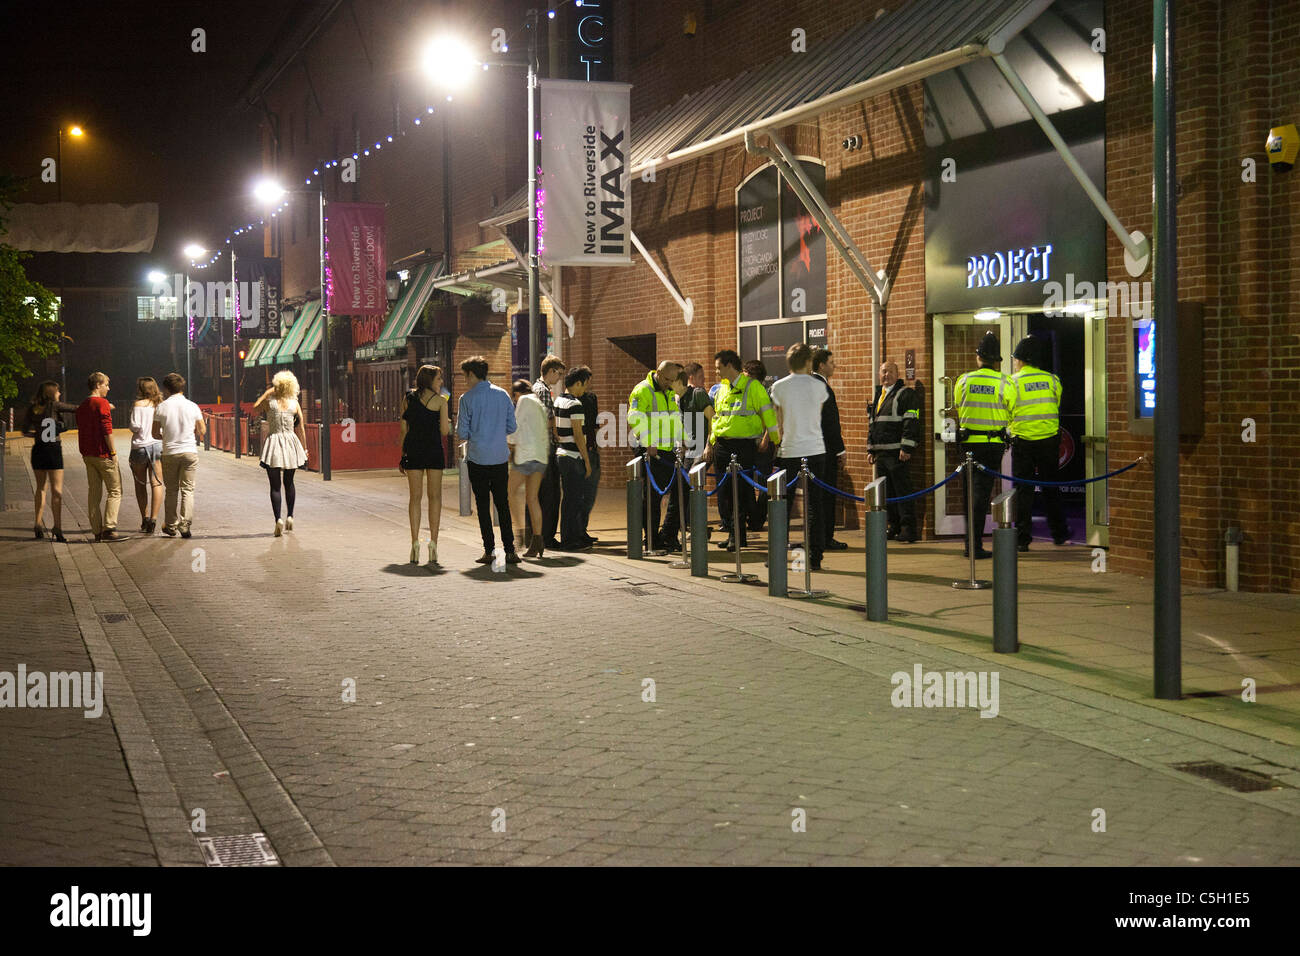 Le persone si sono riunite al di fuori di locali notturni e bar a Norwich, Regno Unito Foto Stock